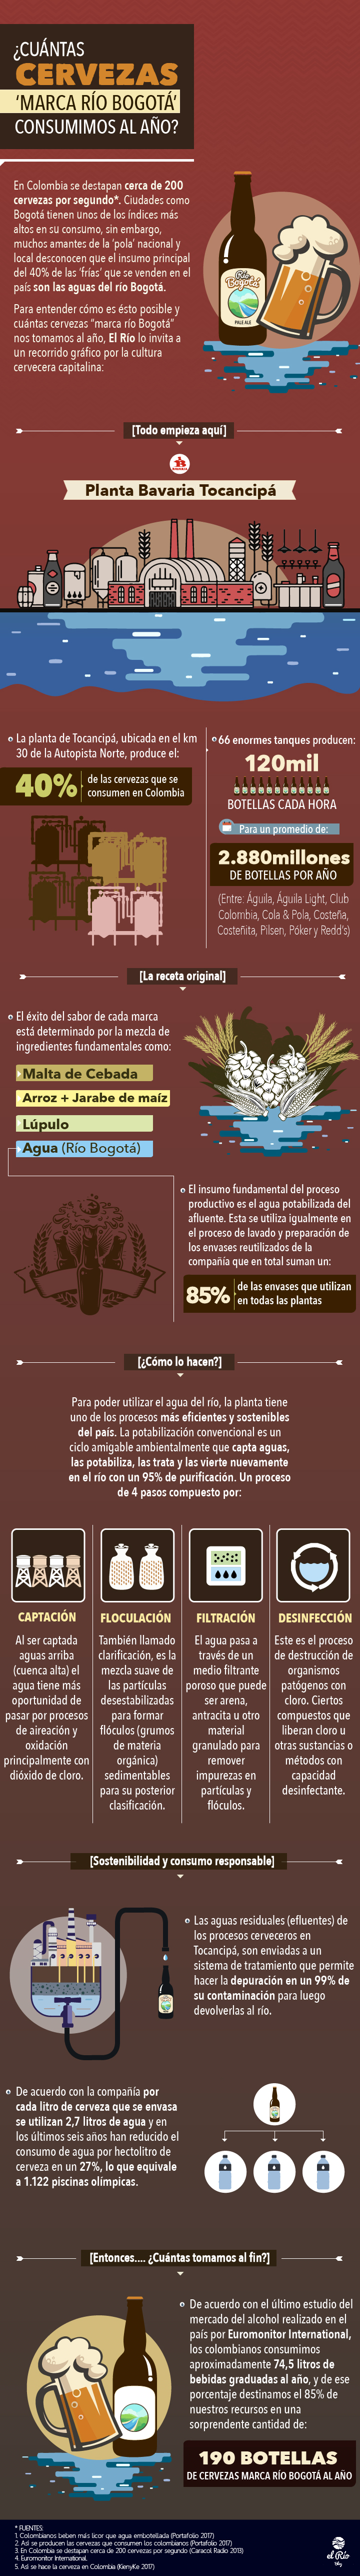 infografiacervezasriobogota-01